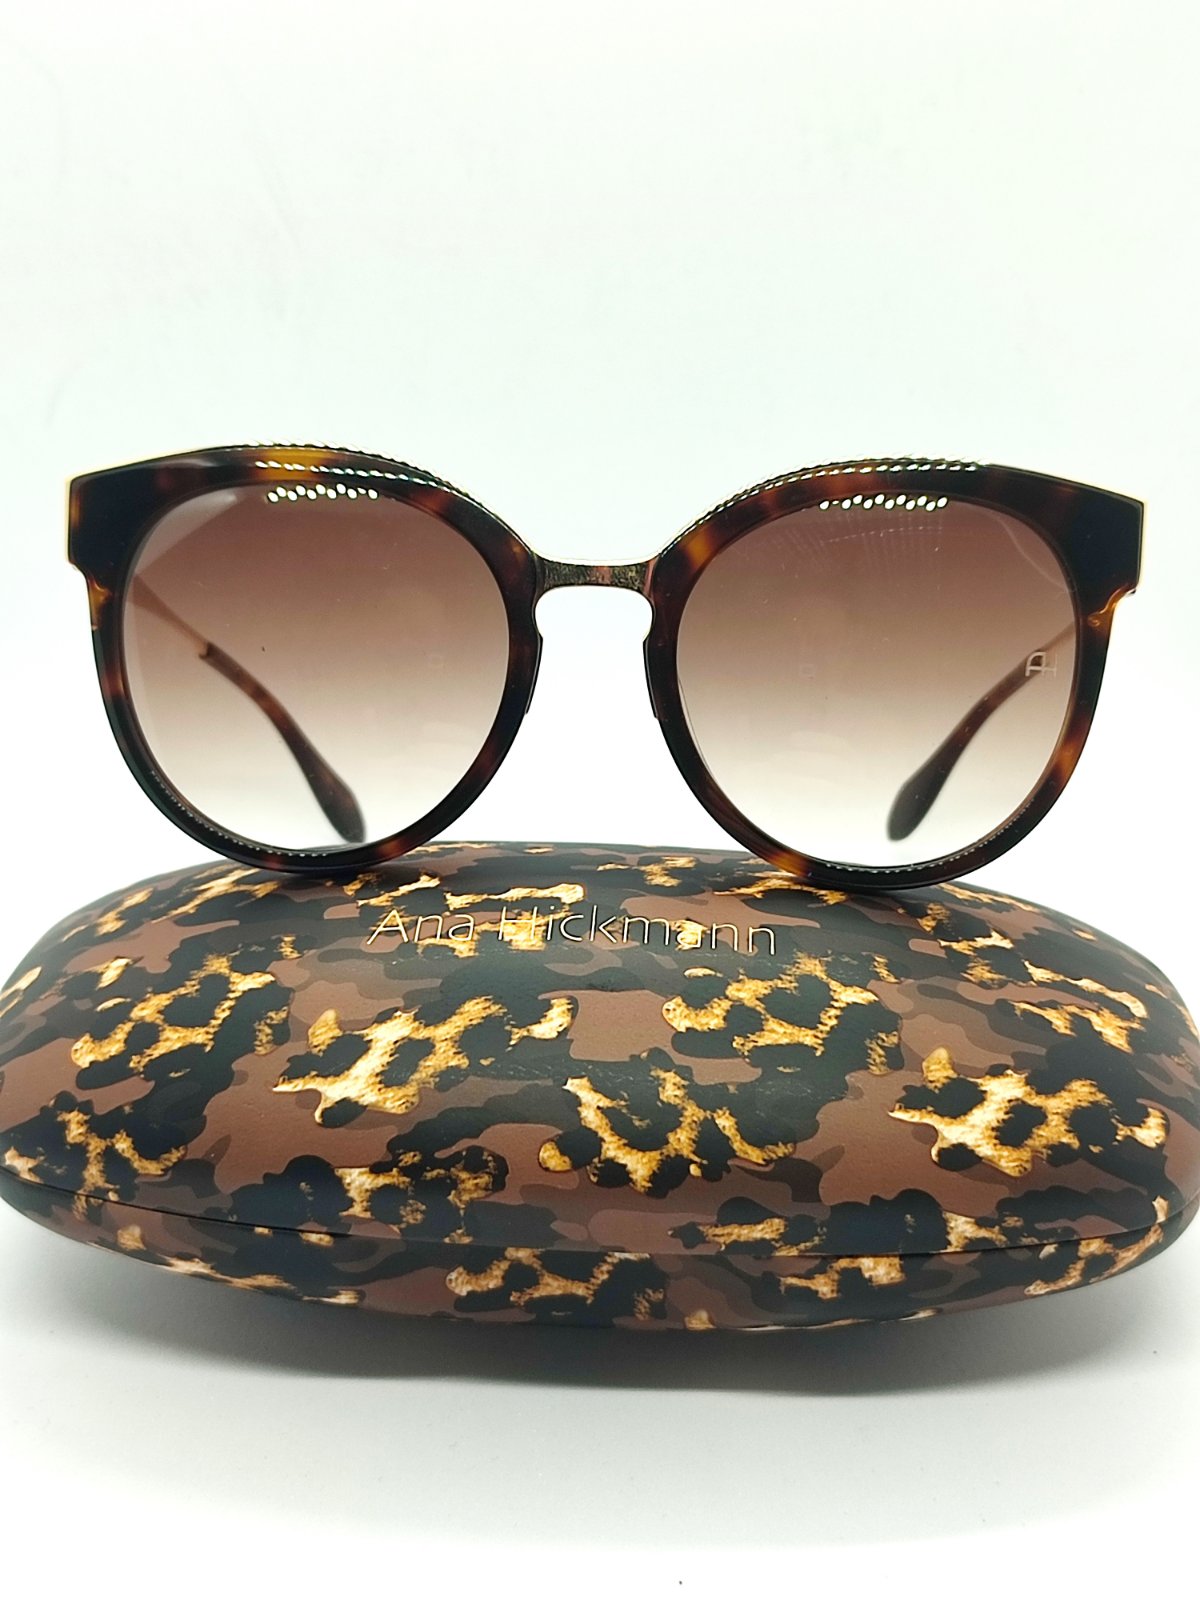 Солнцезащитные очки женские Ana Hickman AH9263G21 коричневые